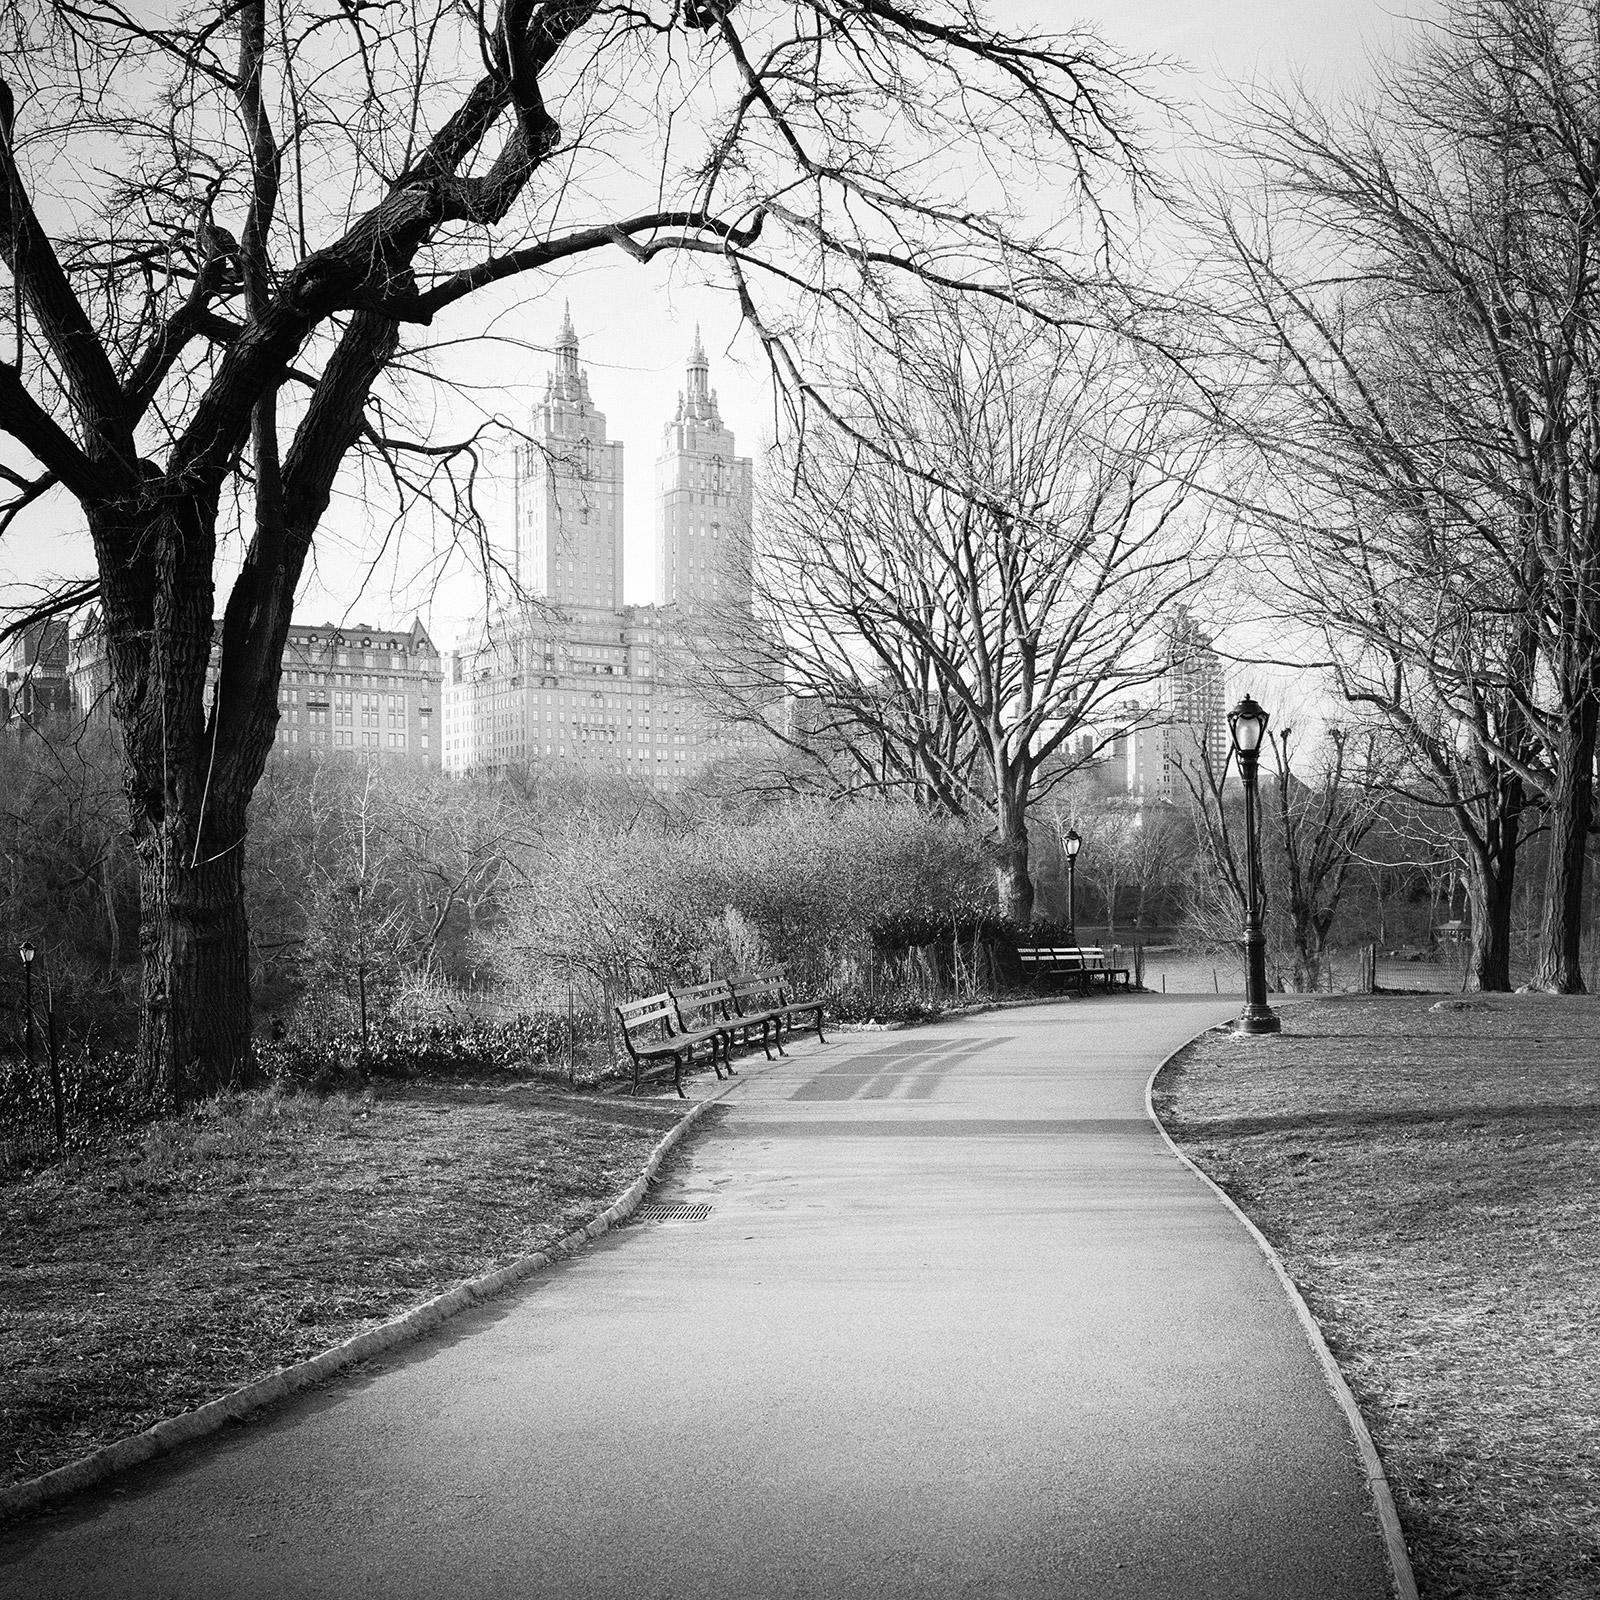 Black and White Photograph Gerald Berghammer - The San Remo, Central Park, New York City, photographie de paysage urbain en noir et blanc